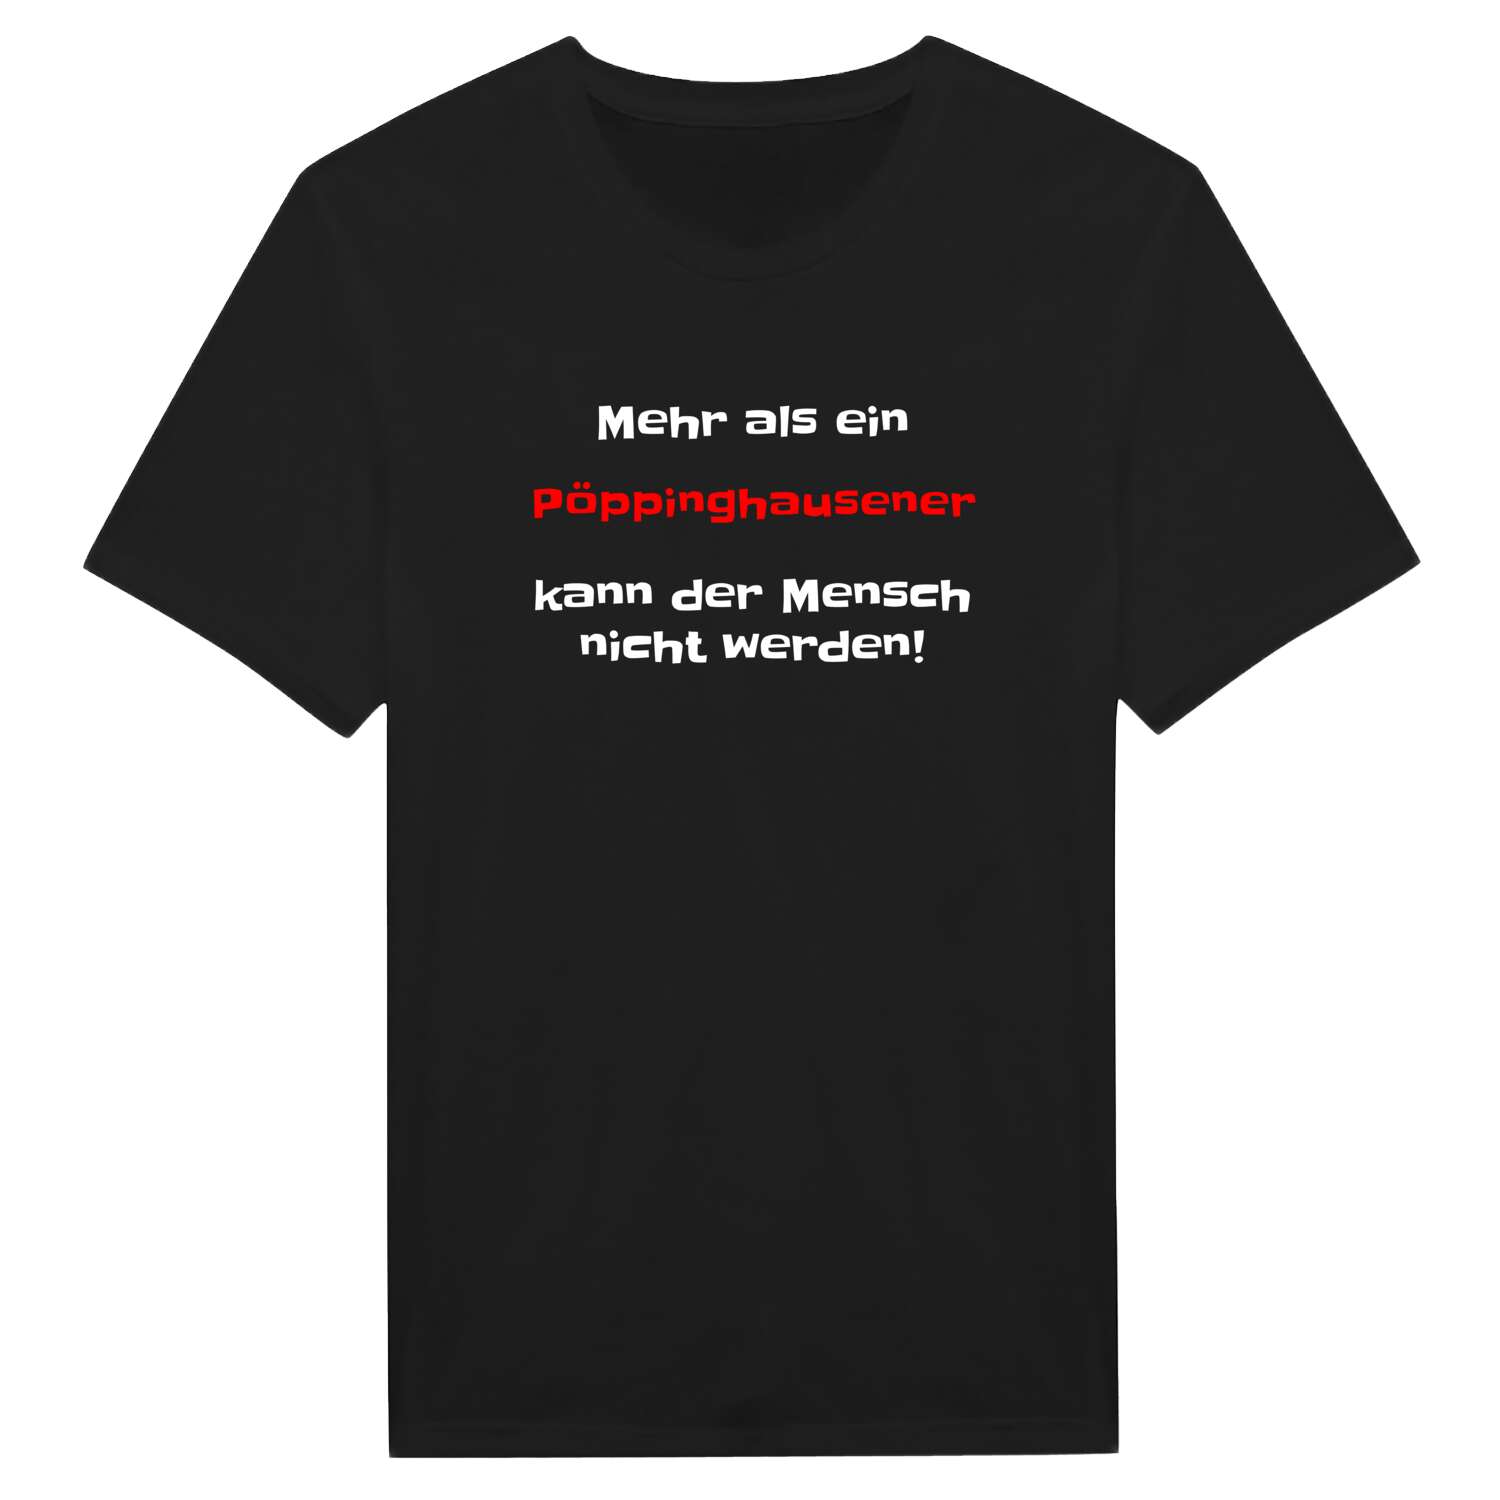 Pöppinghausen T-Shirt »Mehr als ein«